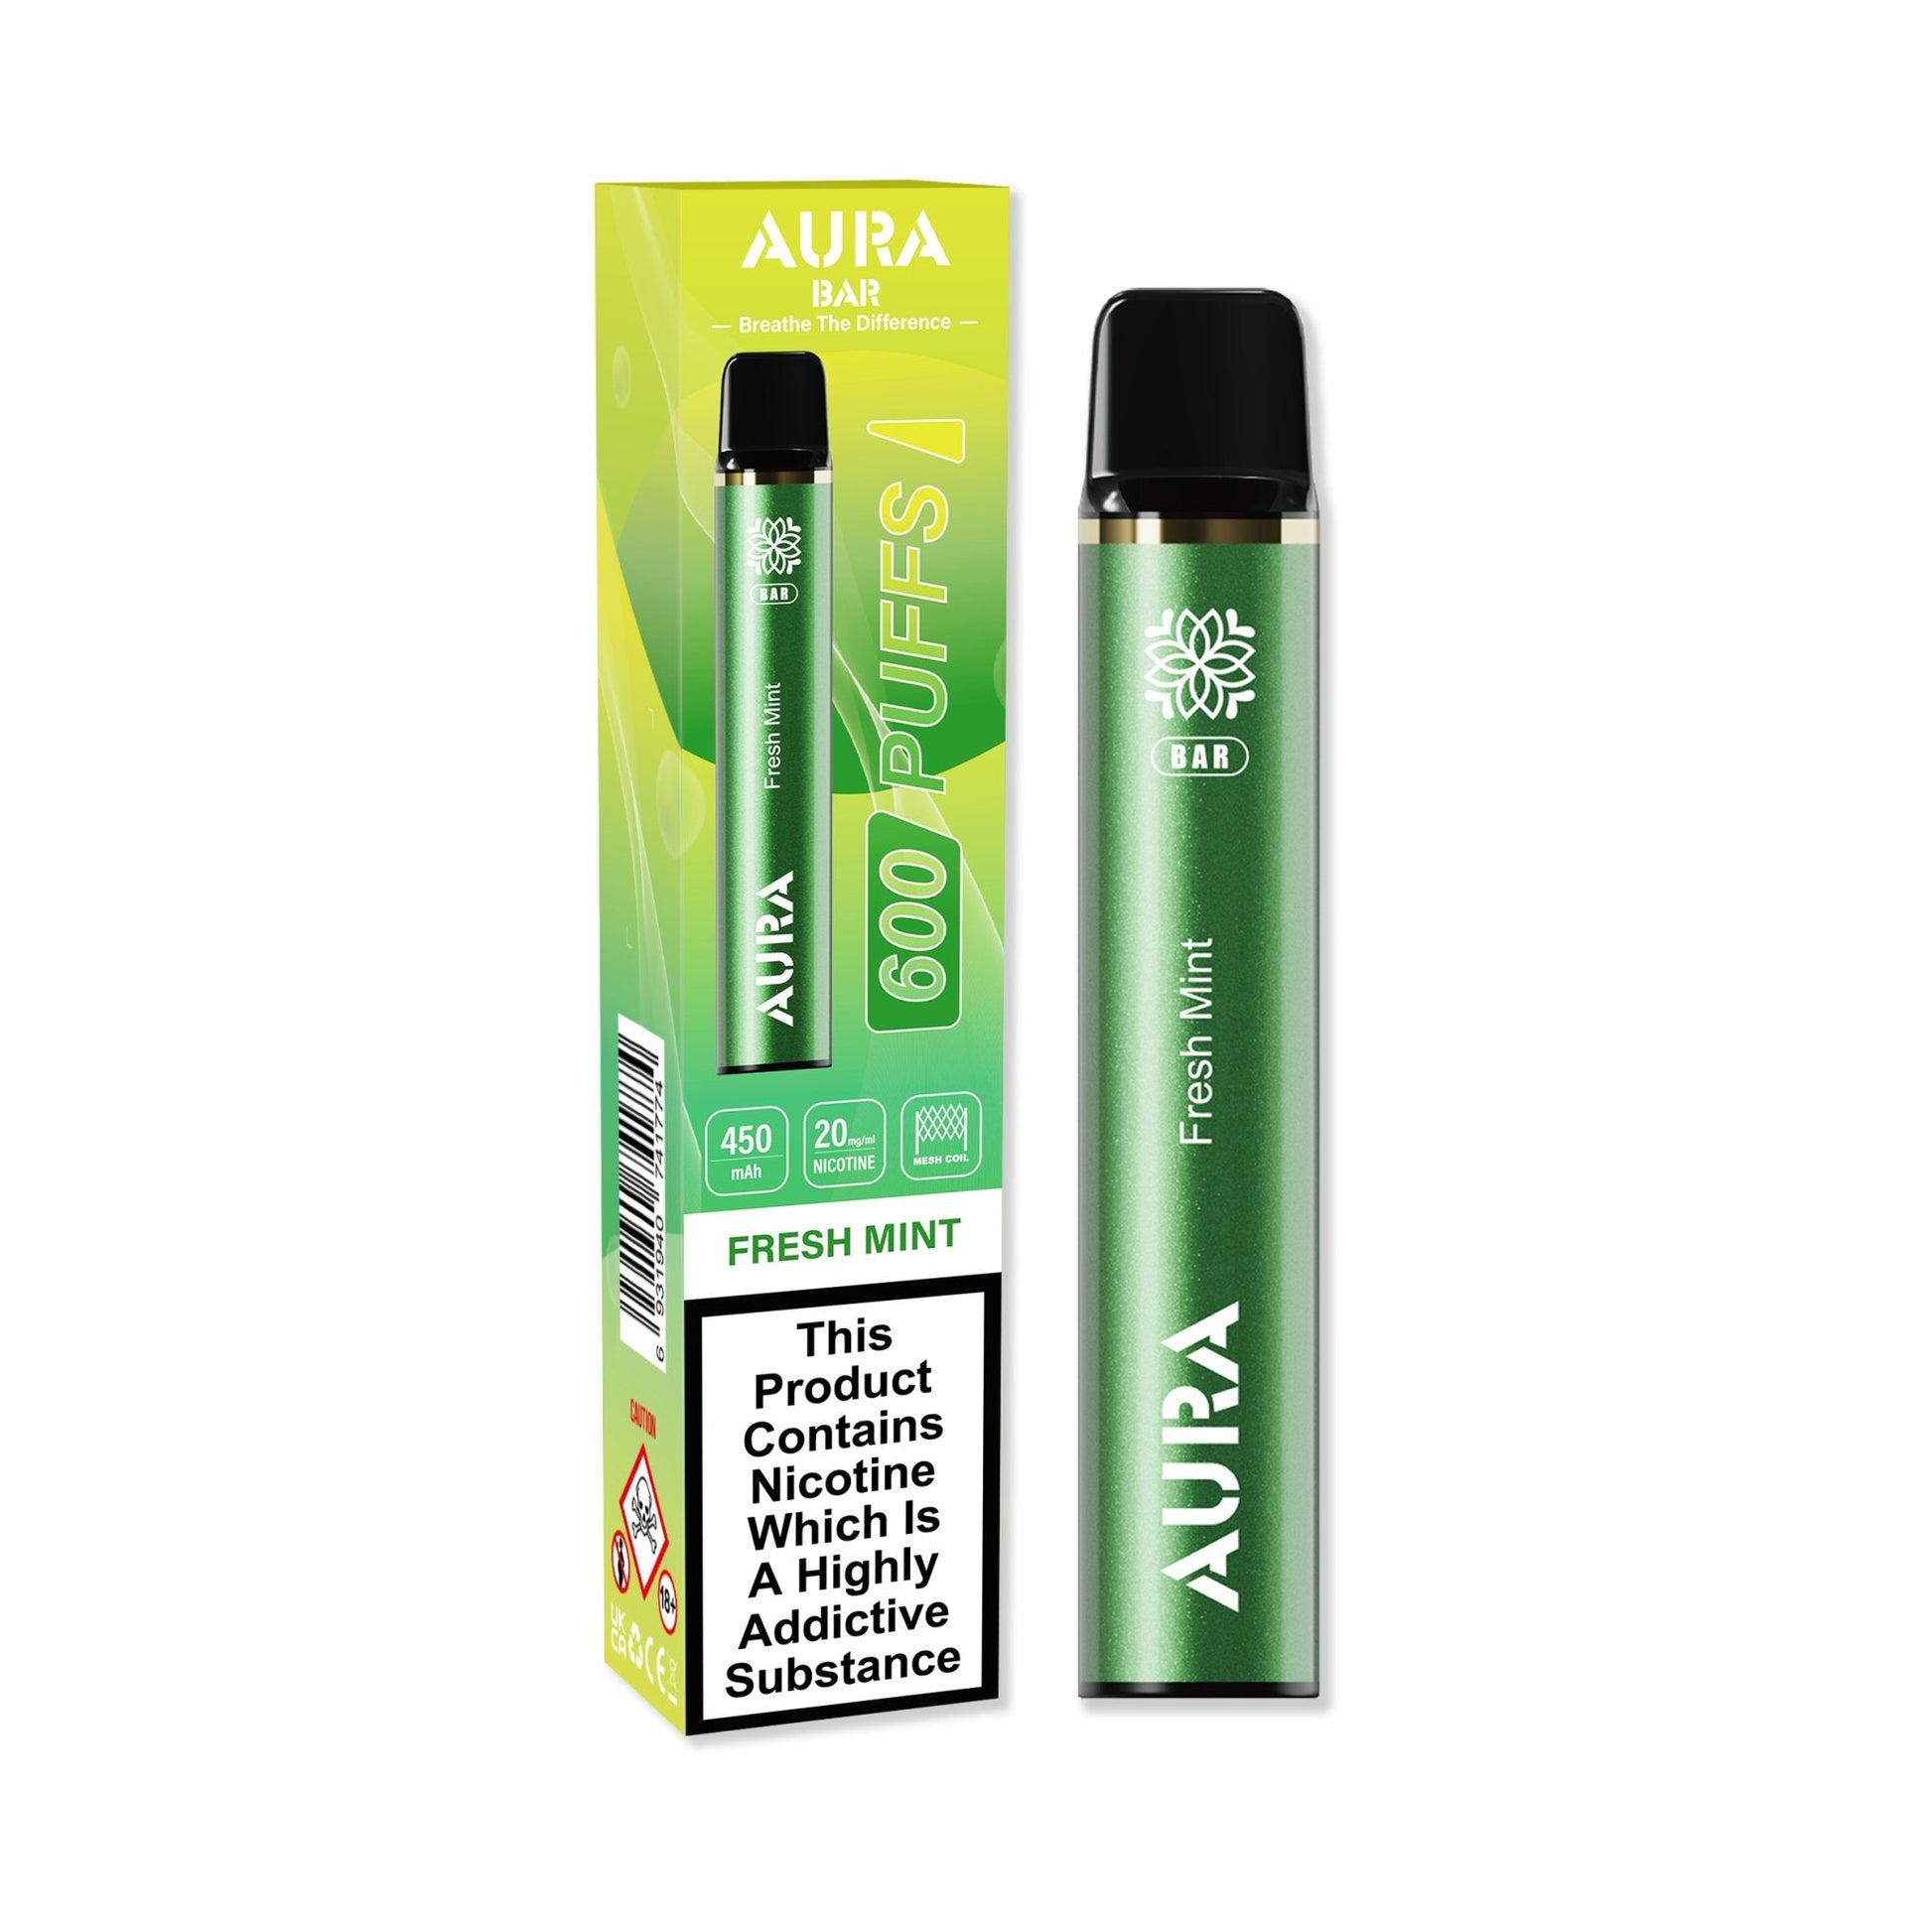 Aura Bar 600 Puffs Disposable Vape Pod Box of 10 - Vaperdeals